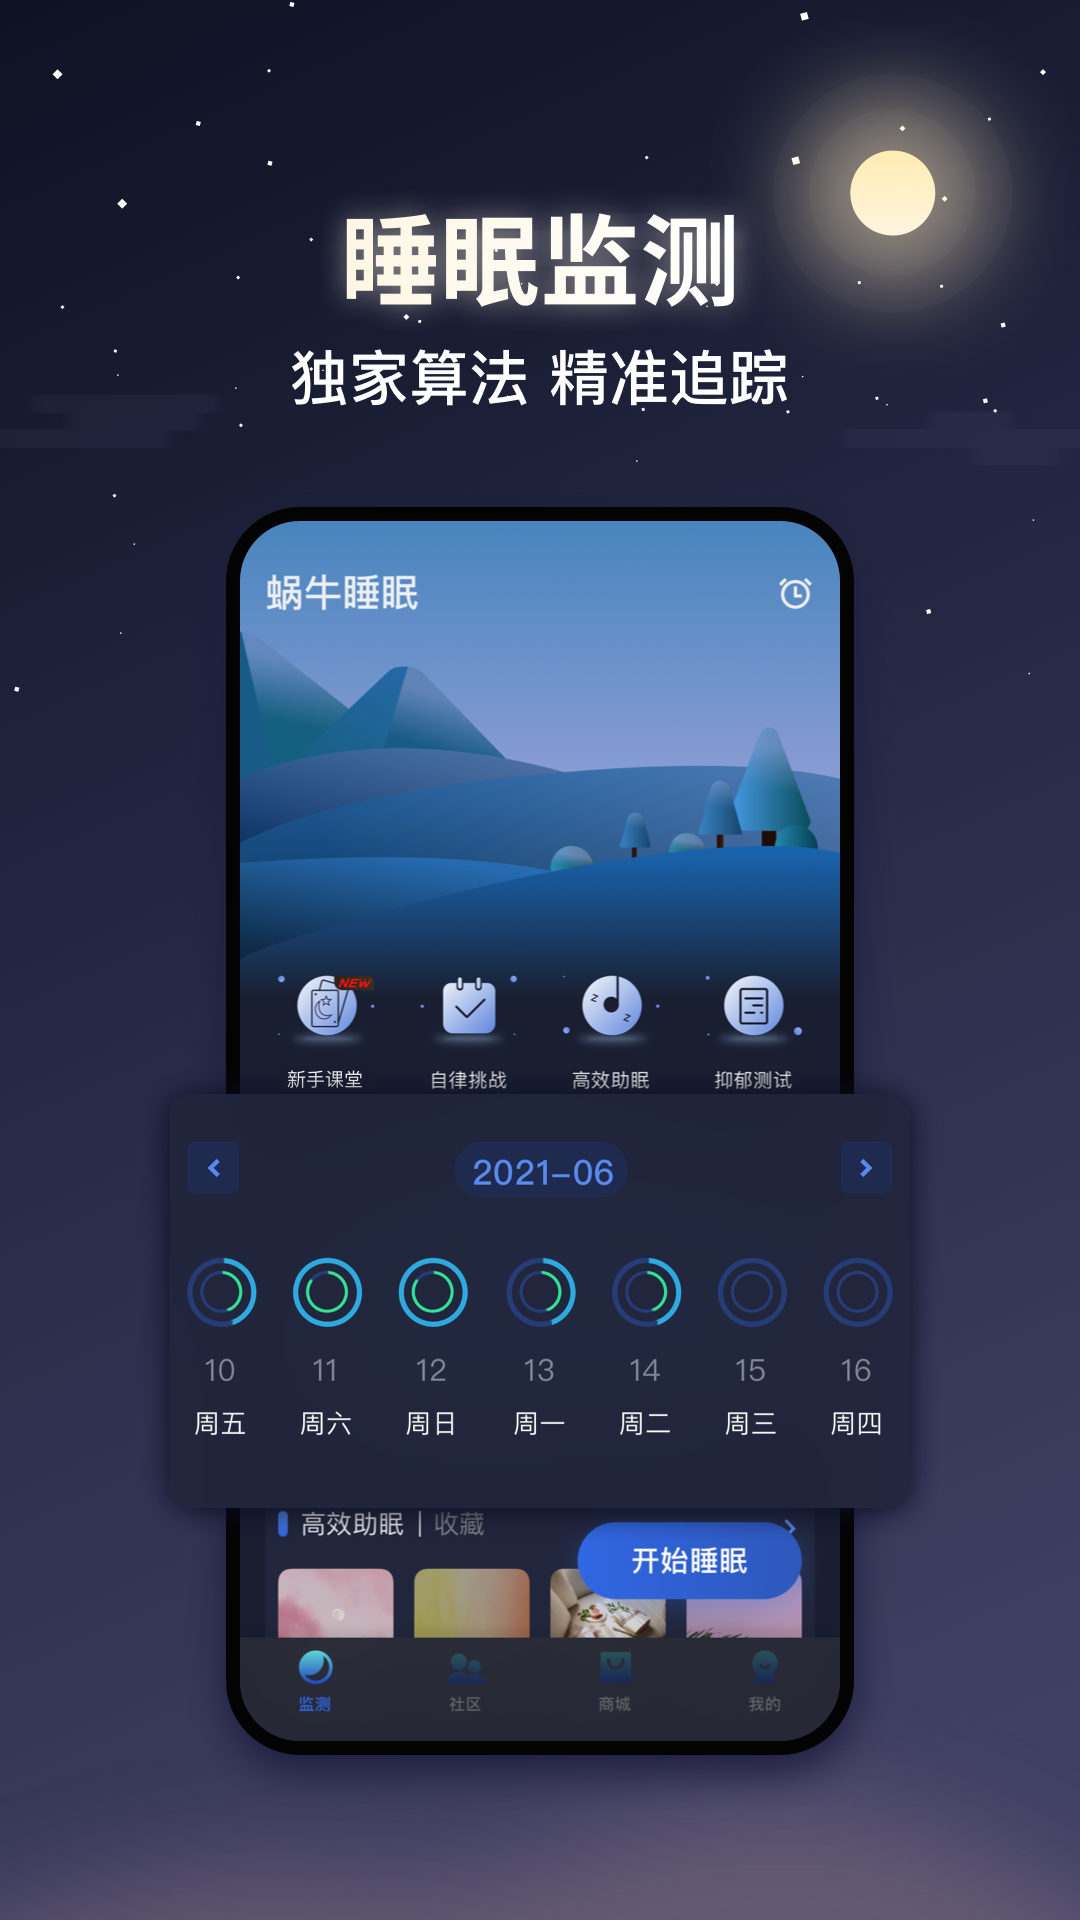 蜗牛睡眠app最新版v5.11.2